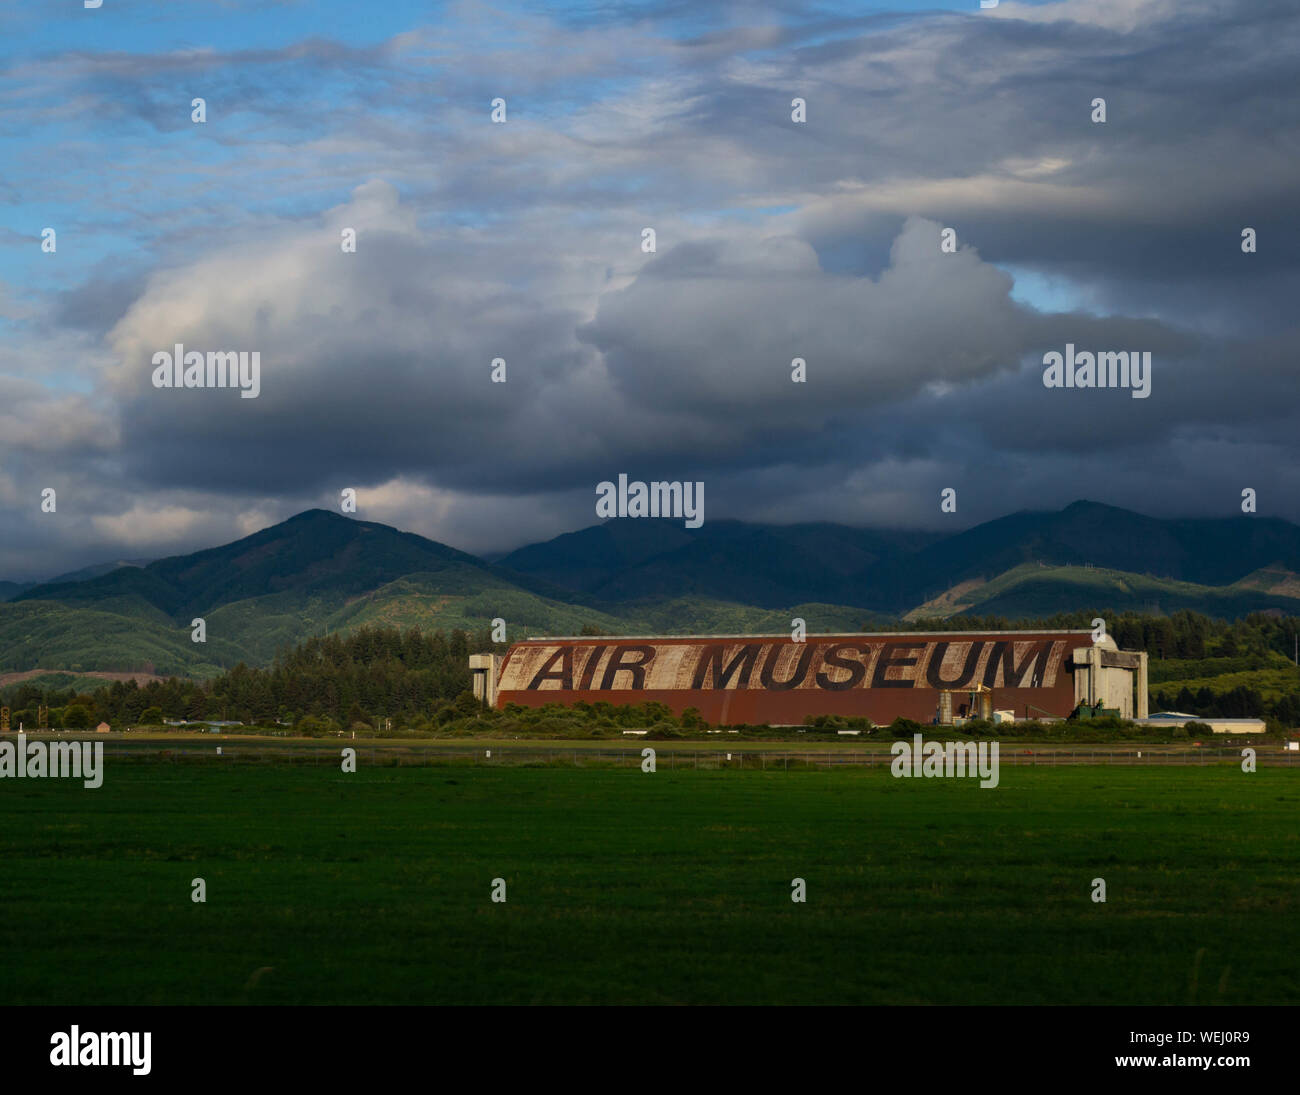 Tillamook, ODER - August, 10, 2019: dramatischer Sicht auf die Air Museum, das größte hölzerne Struktur in den Vereinigten Staaten Stockfoto